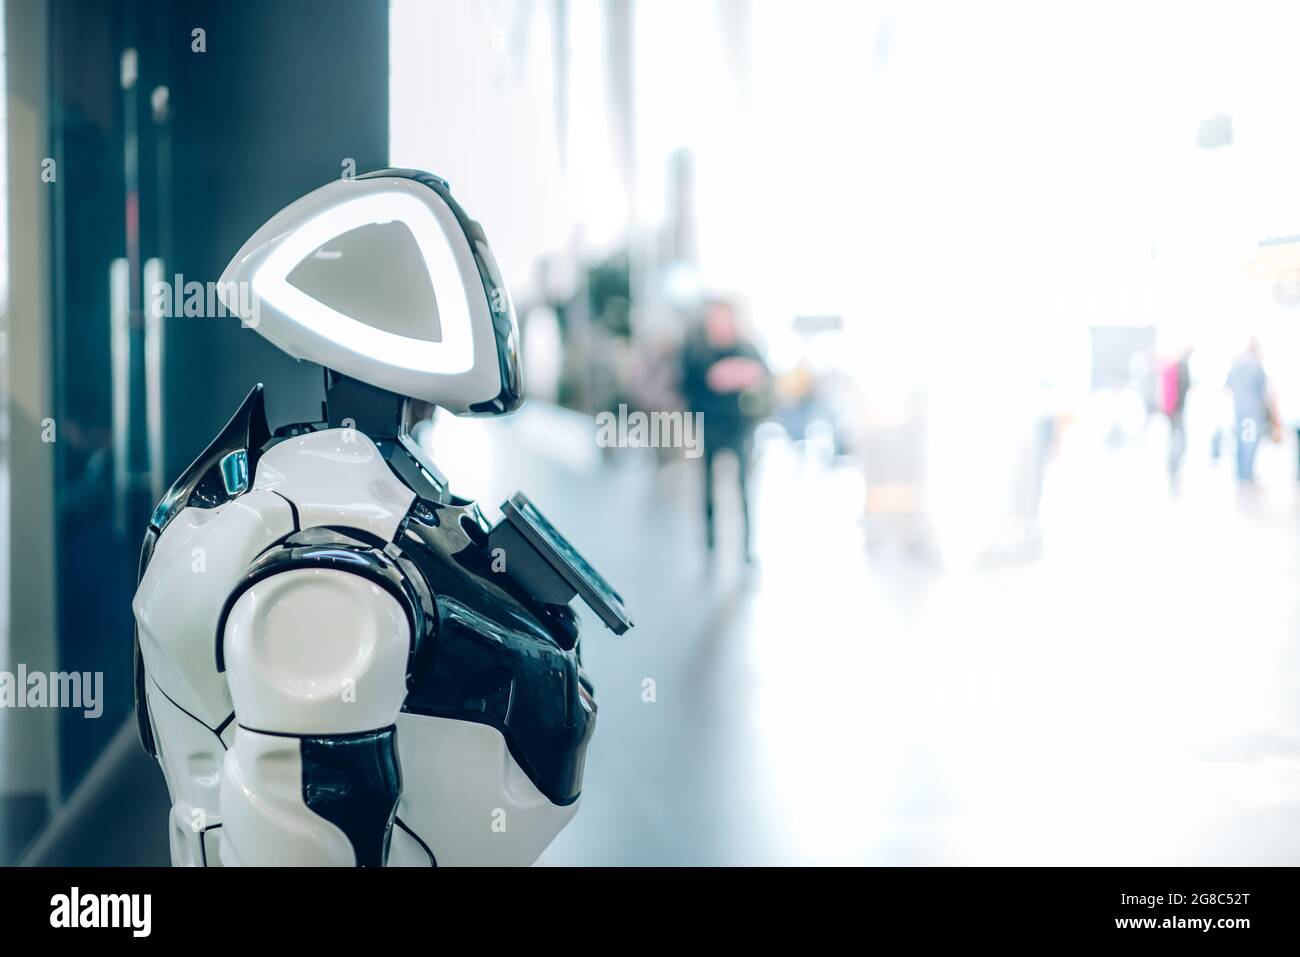 Technologischer Fortschritt des intelligenten Roboterassistenten mit künstlicher Intelligenz im öffentlichen Raum. Futuristisches Konzept der Robotik, Maschinen im Alltag Stockfoto